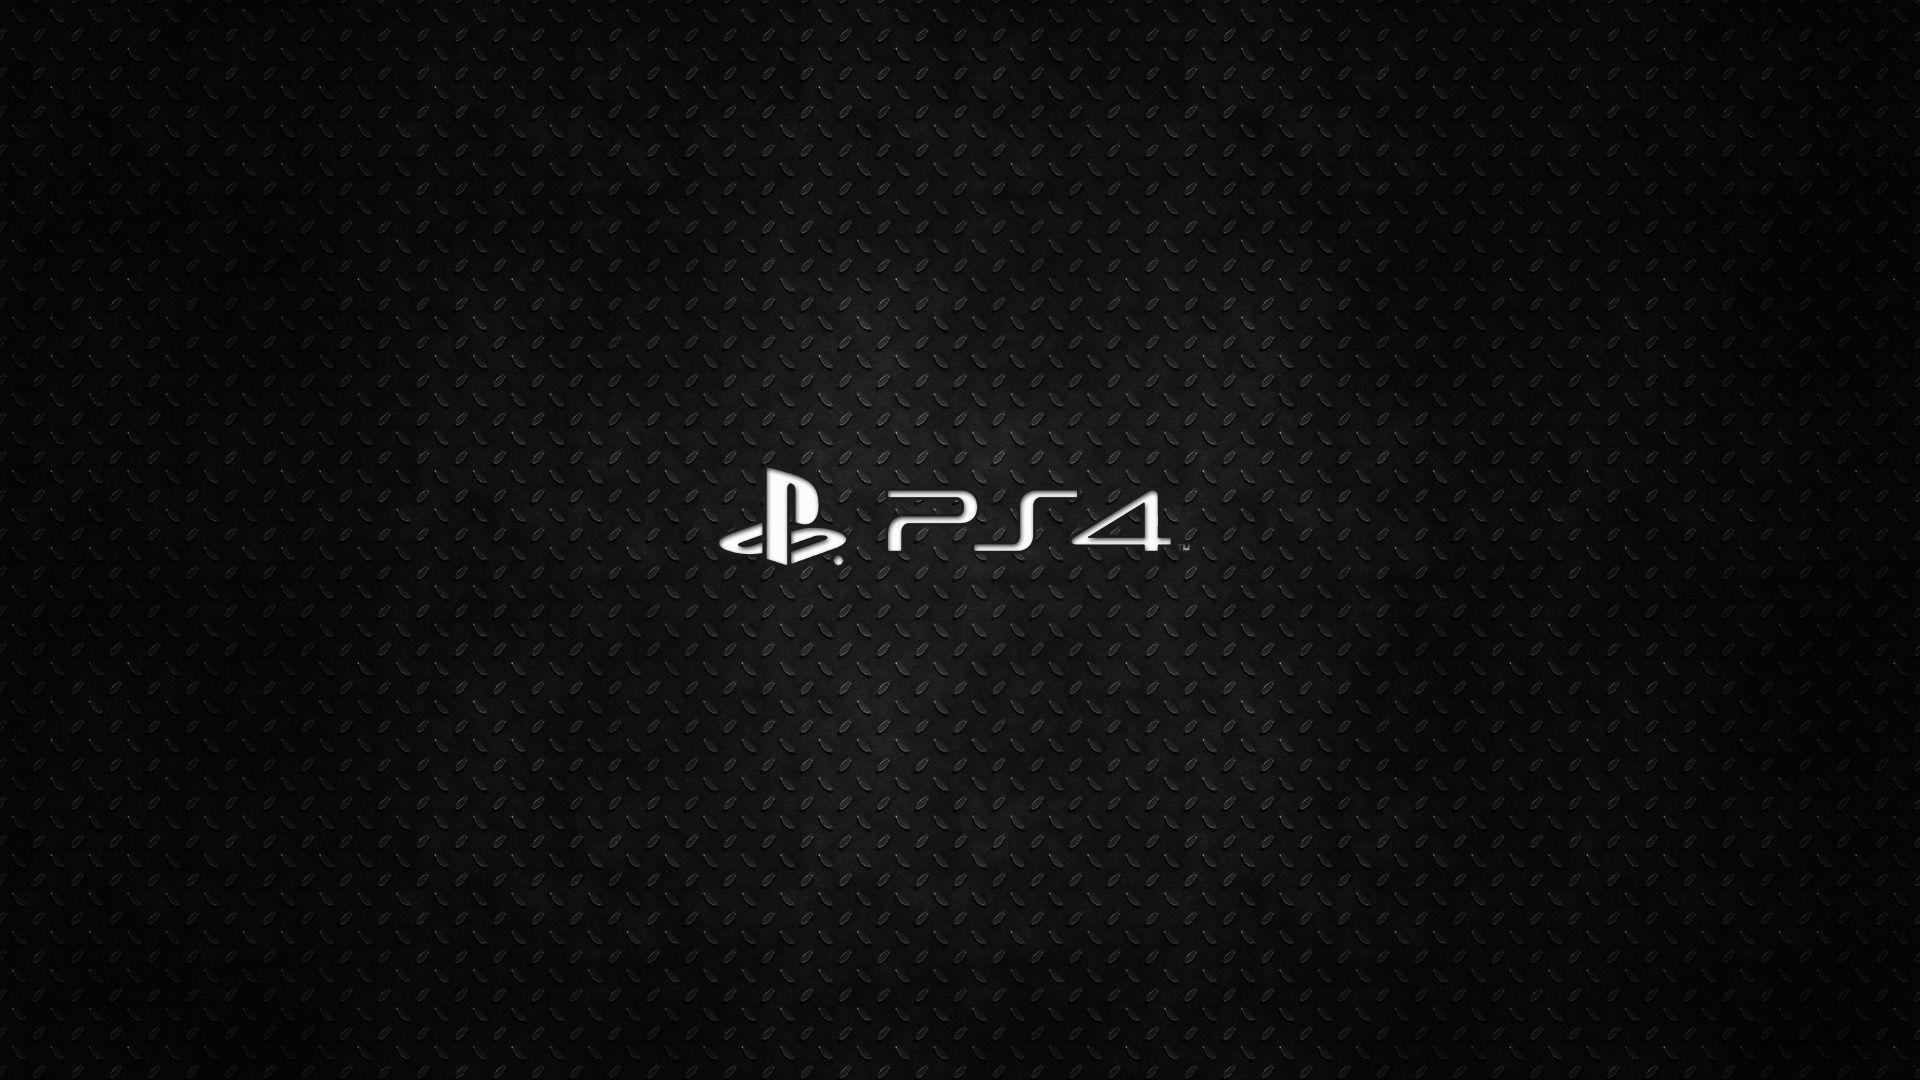 Playstation 4 Wallpaper. Playstation, Playstation logo